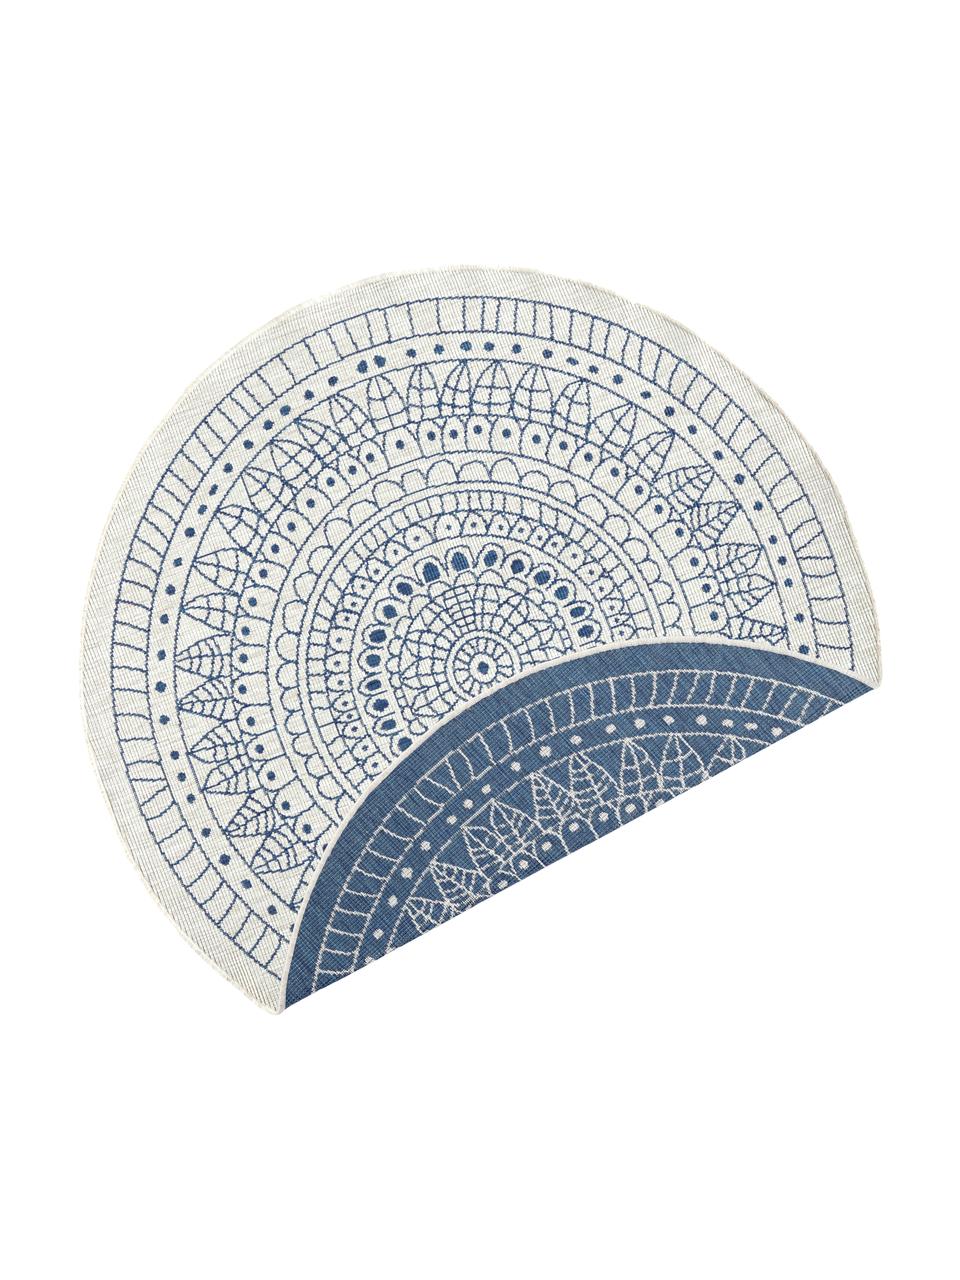 Tappeto reversibile da interno-esterno Porto, Blu, color crema, Ø 200 cm (taglia L)